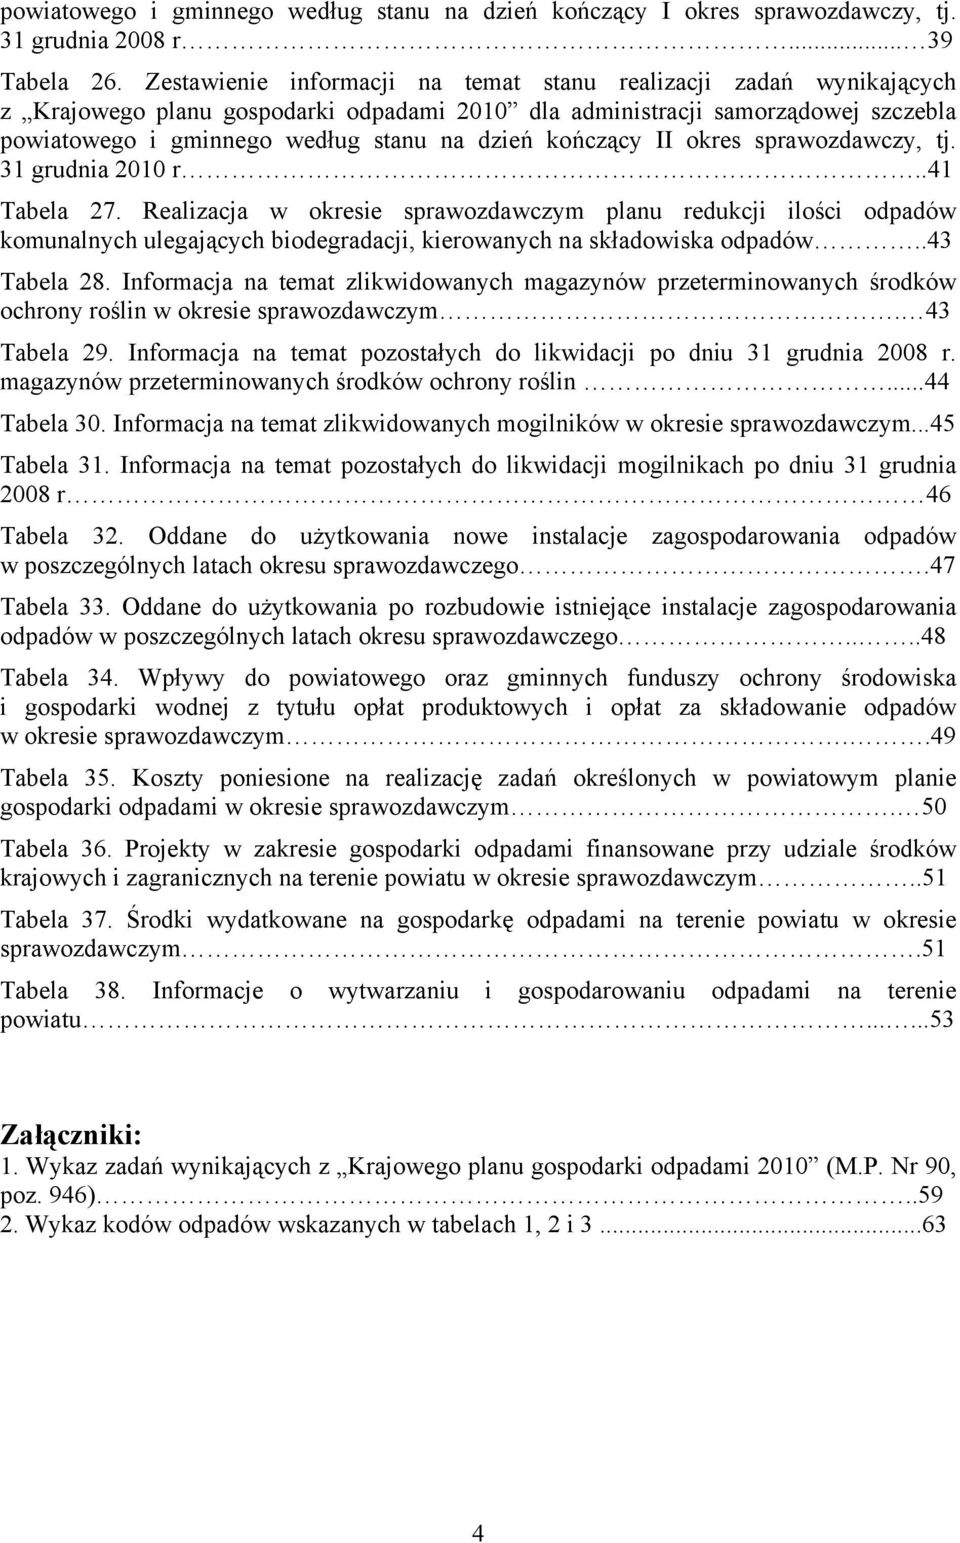 kończący II okres sprawozdawczy, tj. 31 grudnia 2010 r..41 Tabela 27.